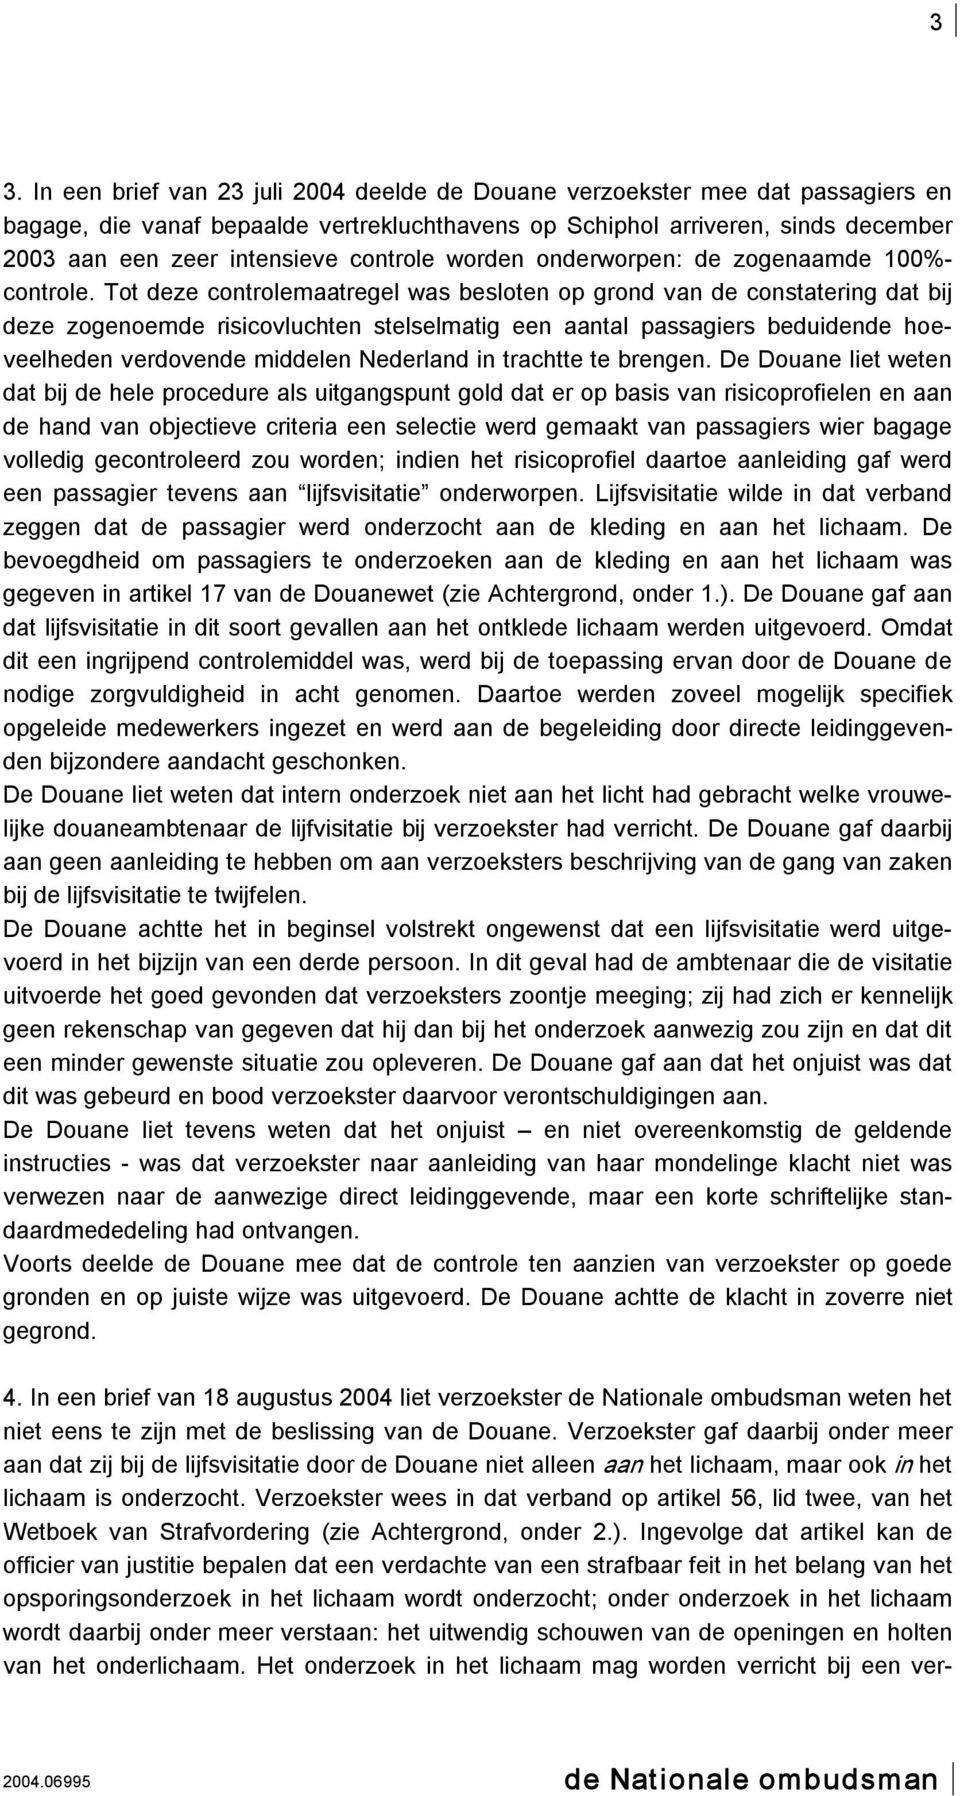 Tot deze controlemaatregel was besloten op grond van de constatering dat bij deze zogenoemde risicovluchten stelselmatig een aantal passagiers beduidende hoeveelheden verdovende middelen Nederland in